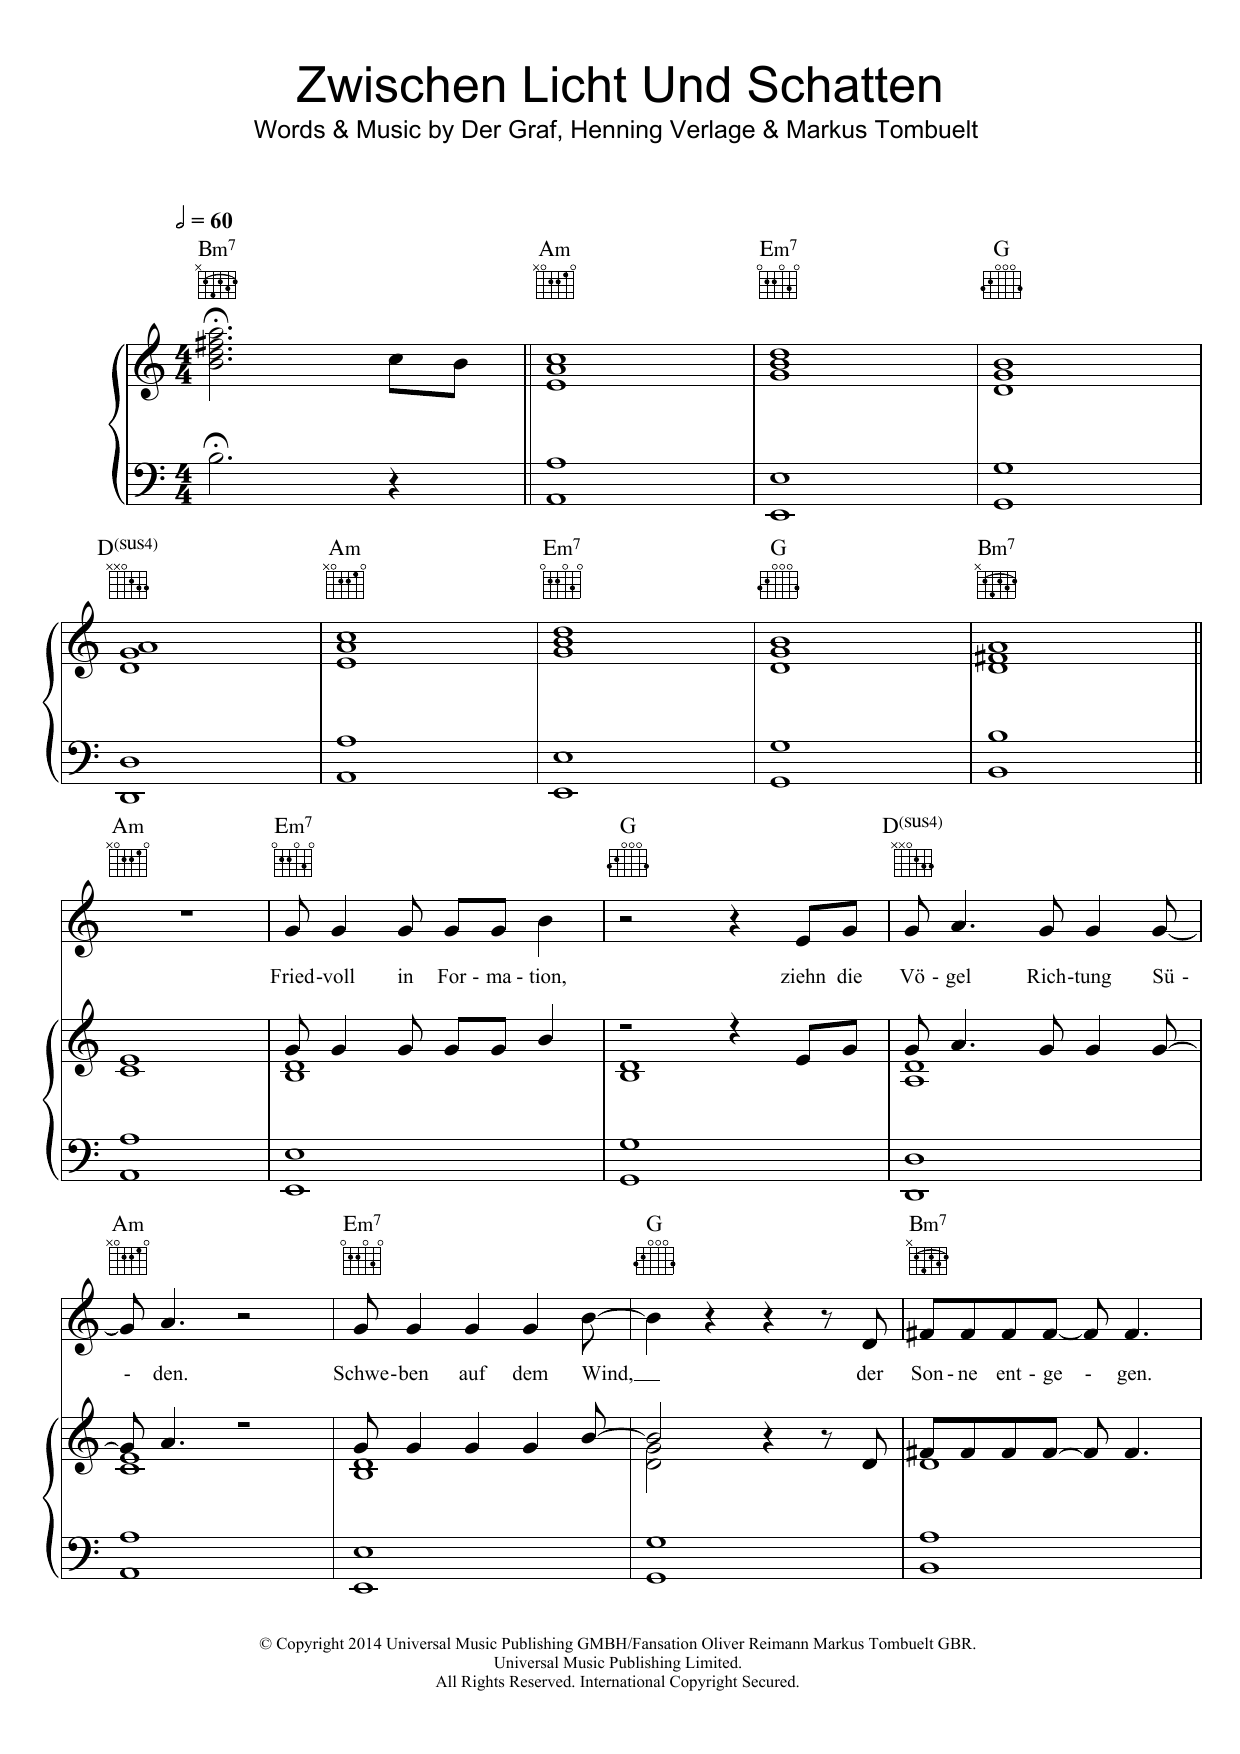 Unheilig Zwischen Licht und Schatten Sheet Music Notes & Chords for Piano, Vocal & Guitar (Right-Hand Melody) - Download or Print PDF